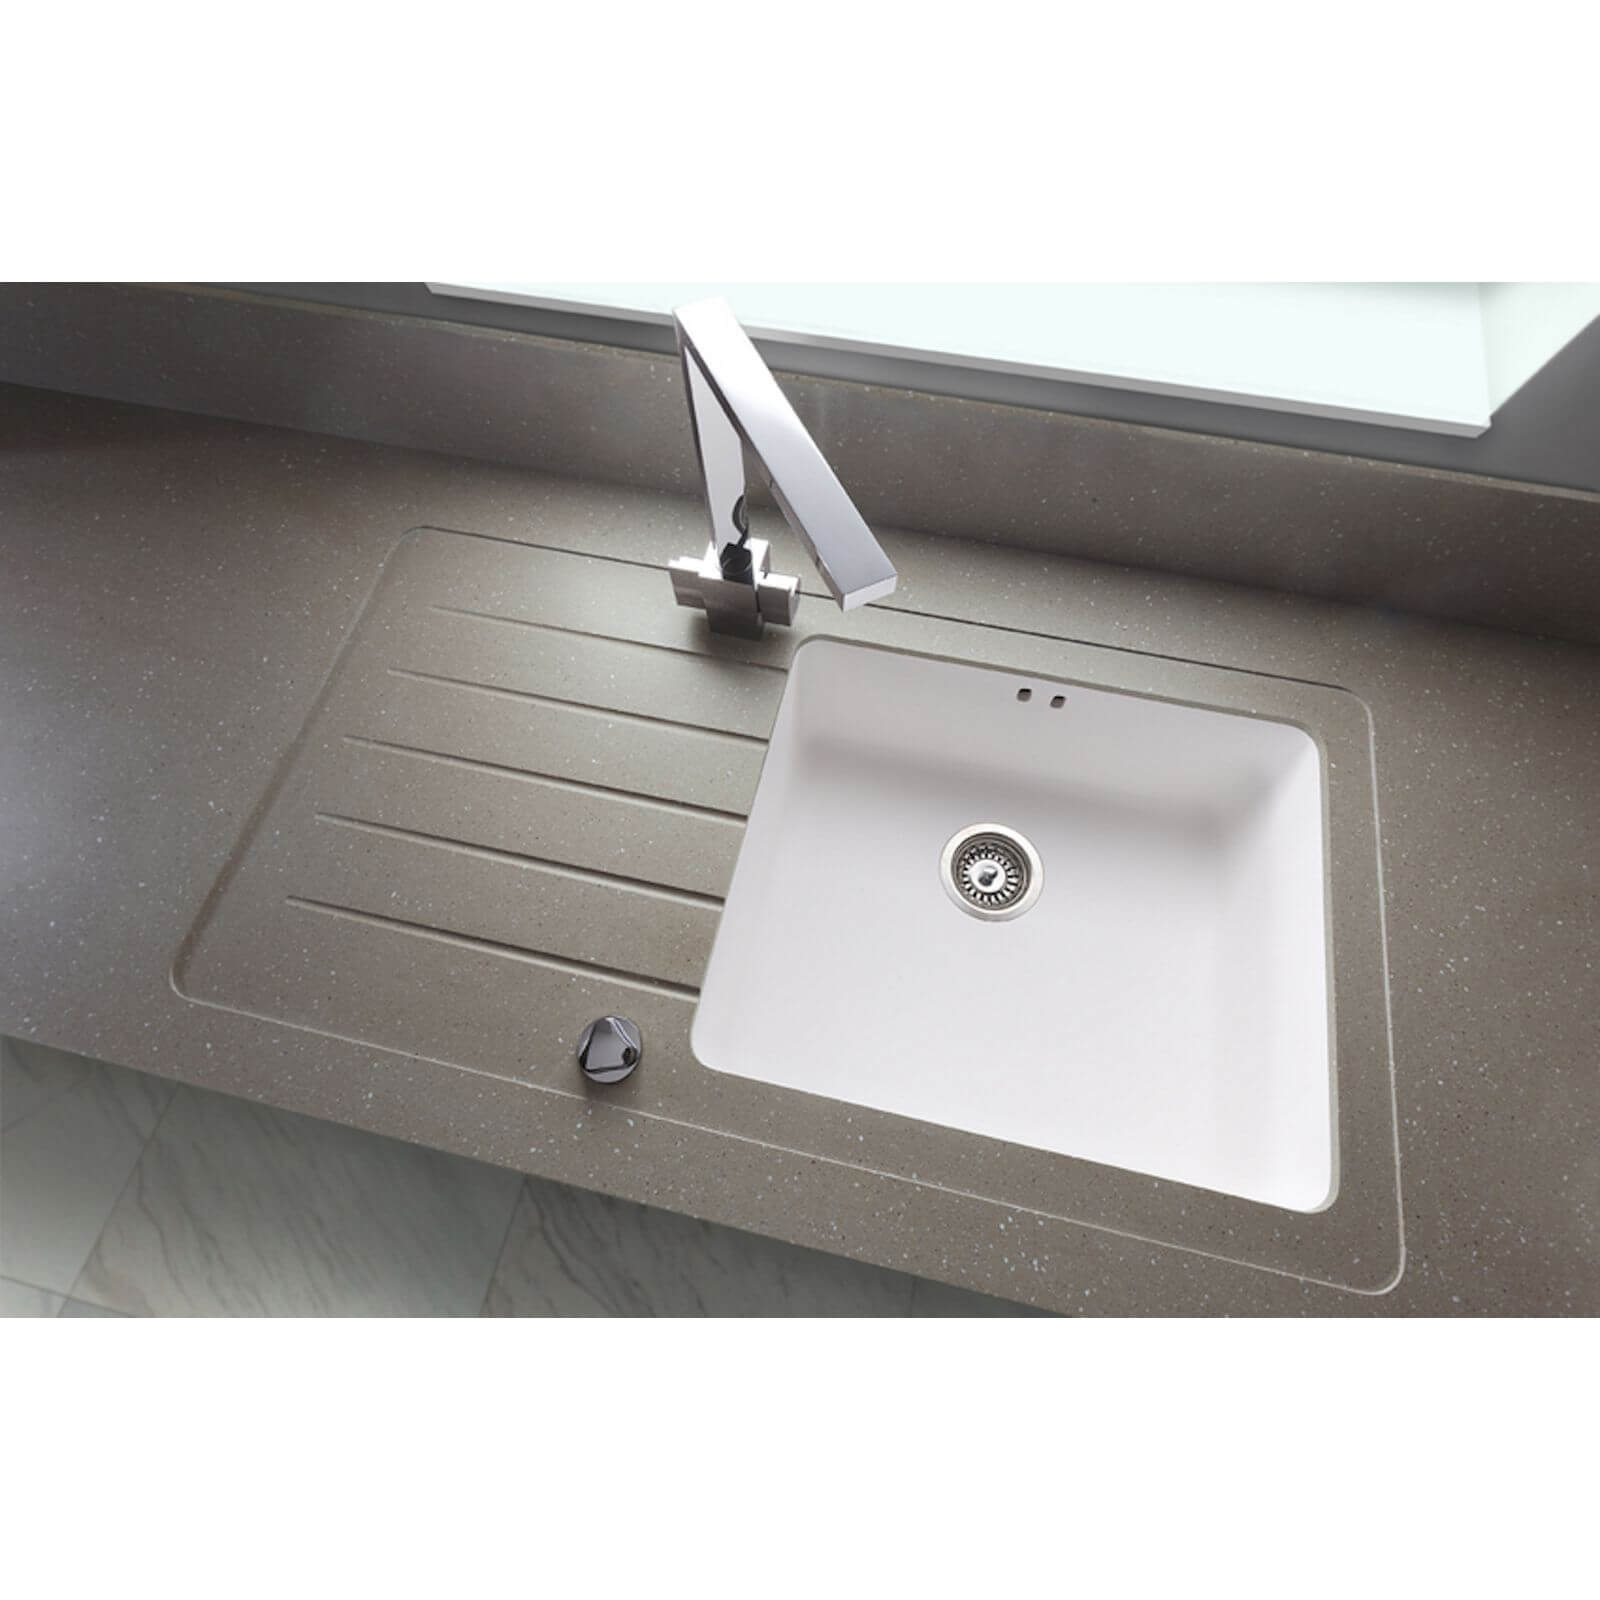 Maia Brazilian Greige Kitchen Sink Worktop - 1.5 Designer Right Hand Bowl - 1800 x 650 x 42mm